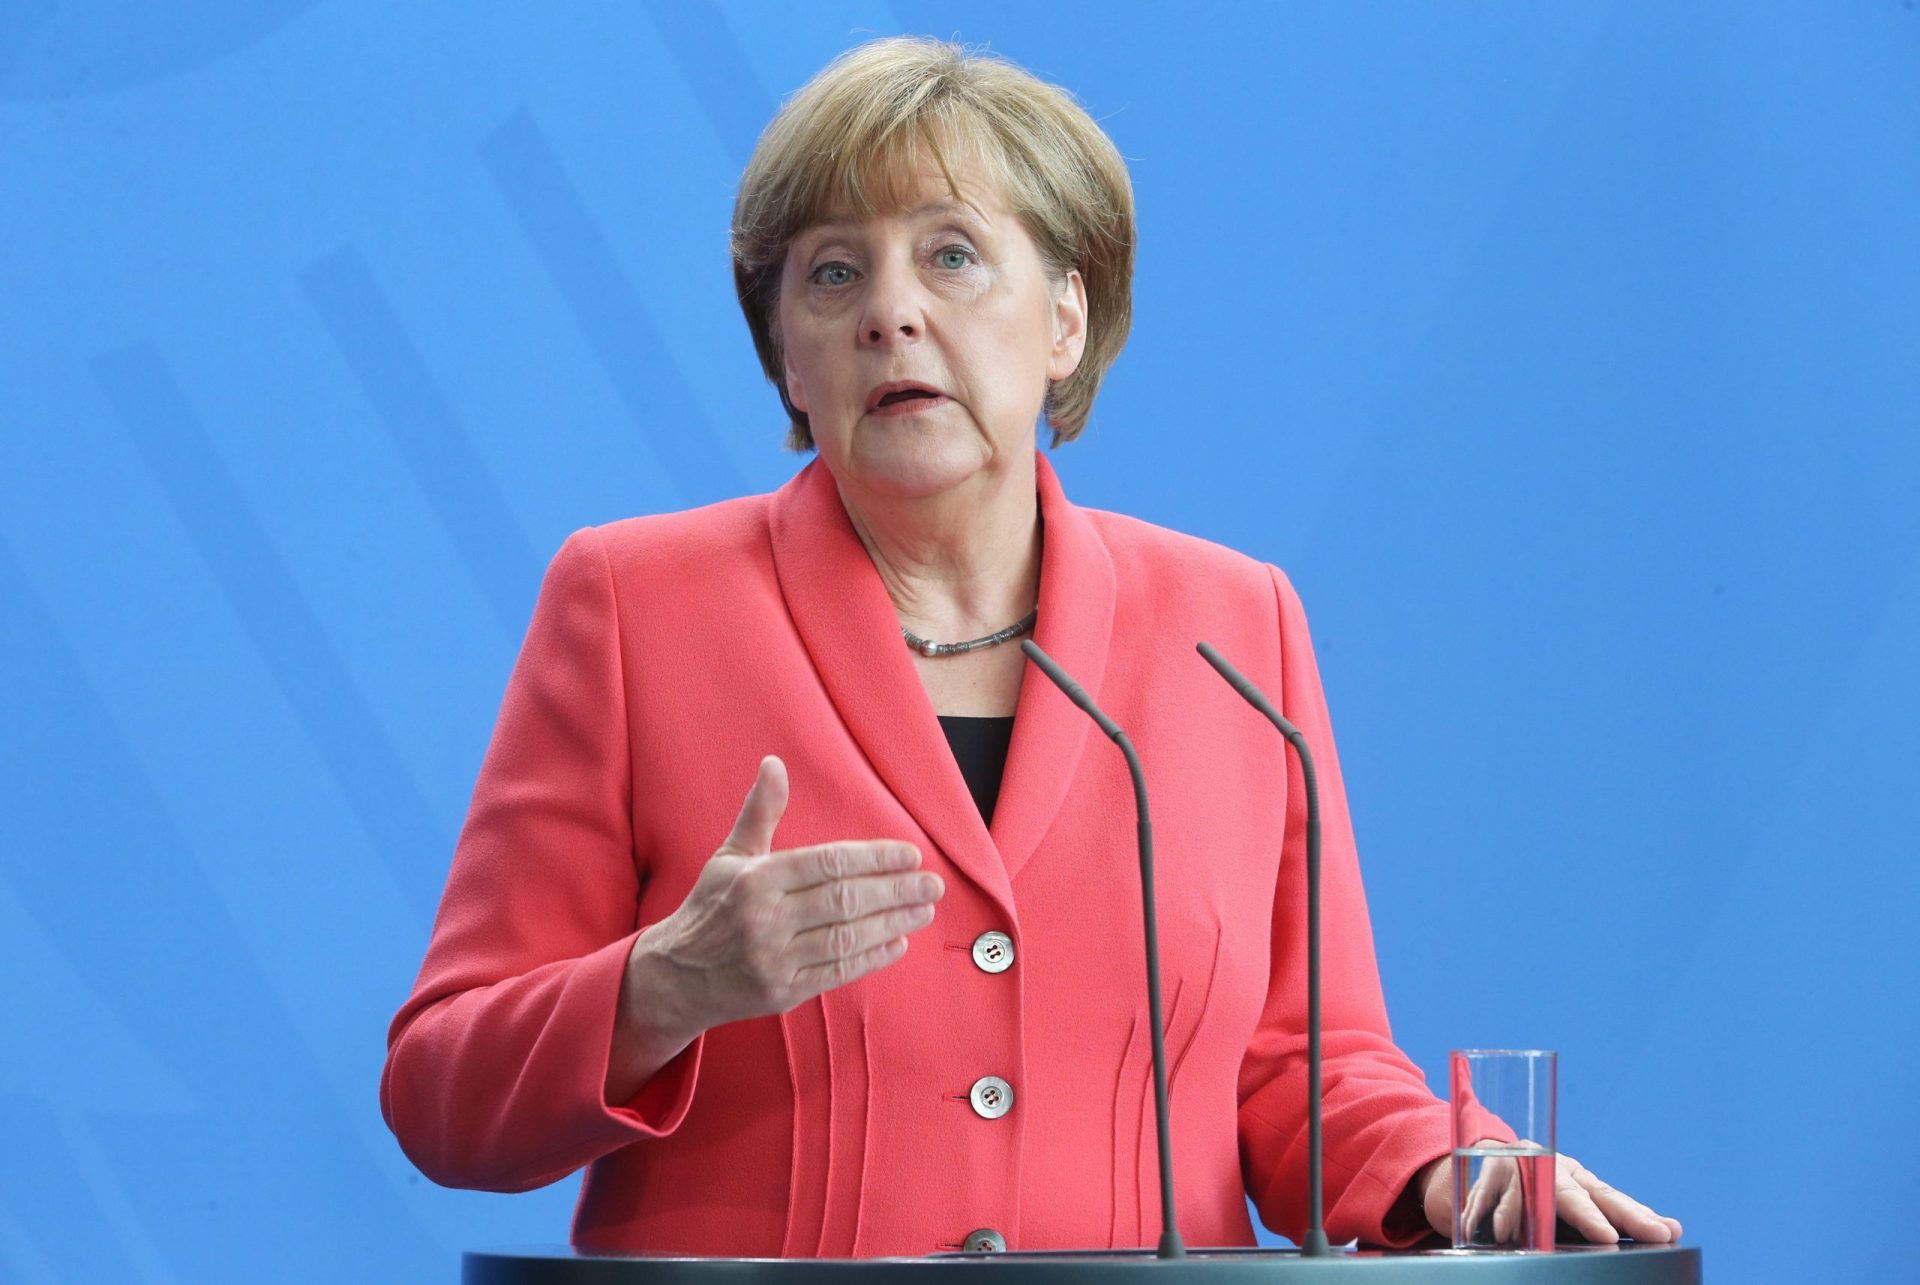 Merkel explica política de asilo a menina em lágrimas em risco de deportação